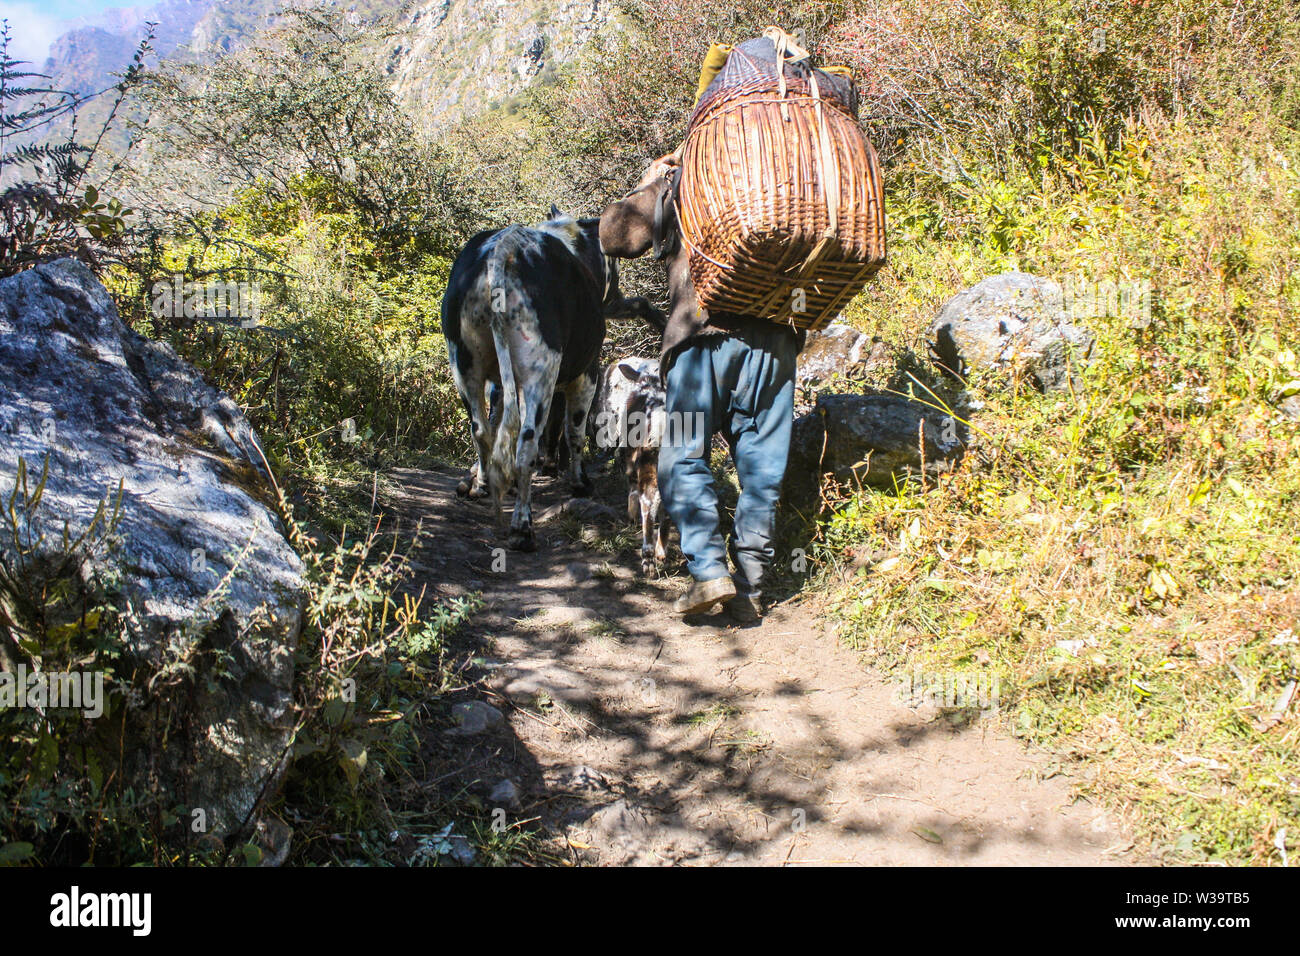 Stili di vita nella regione himalayana del Nepal. Persone locali che effettuano il trasporto di merci nel loro retro. Il trasporto di cose dalla città sulla parte superiore del villaggio di montagna. Foto Stock